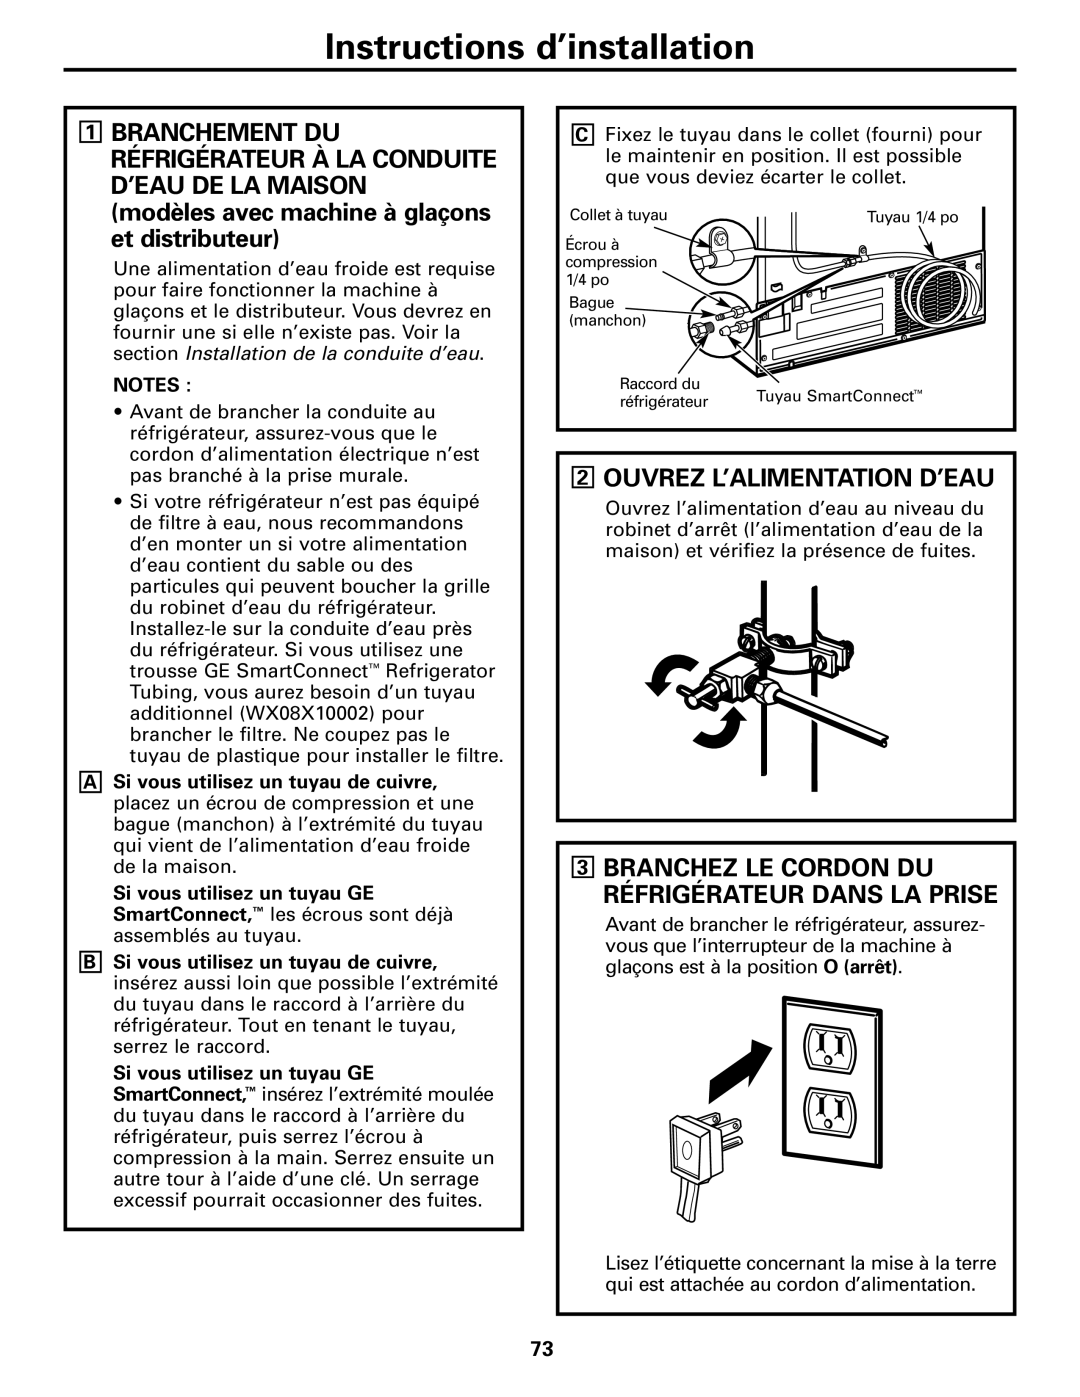 GE 200D8074P017 installation instructions Ouvrez L’Alimentation D’Eau, Branchez Le Cordon Du Réfrigérateur Dans La Prise 